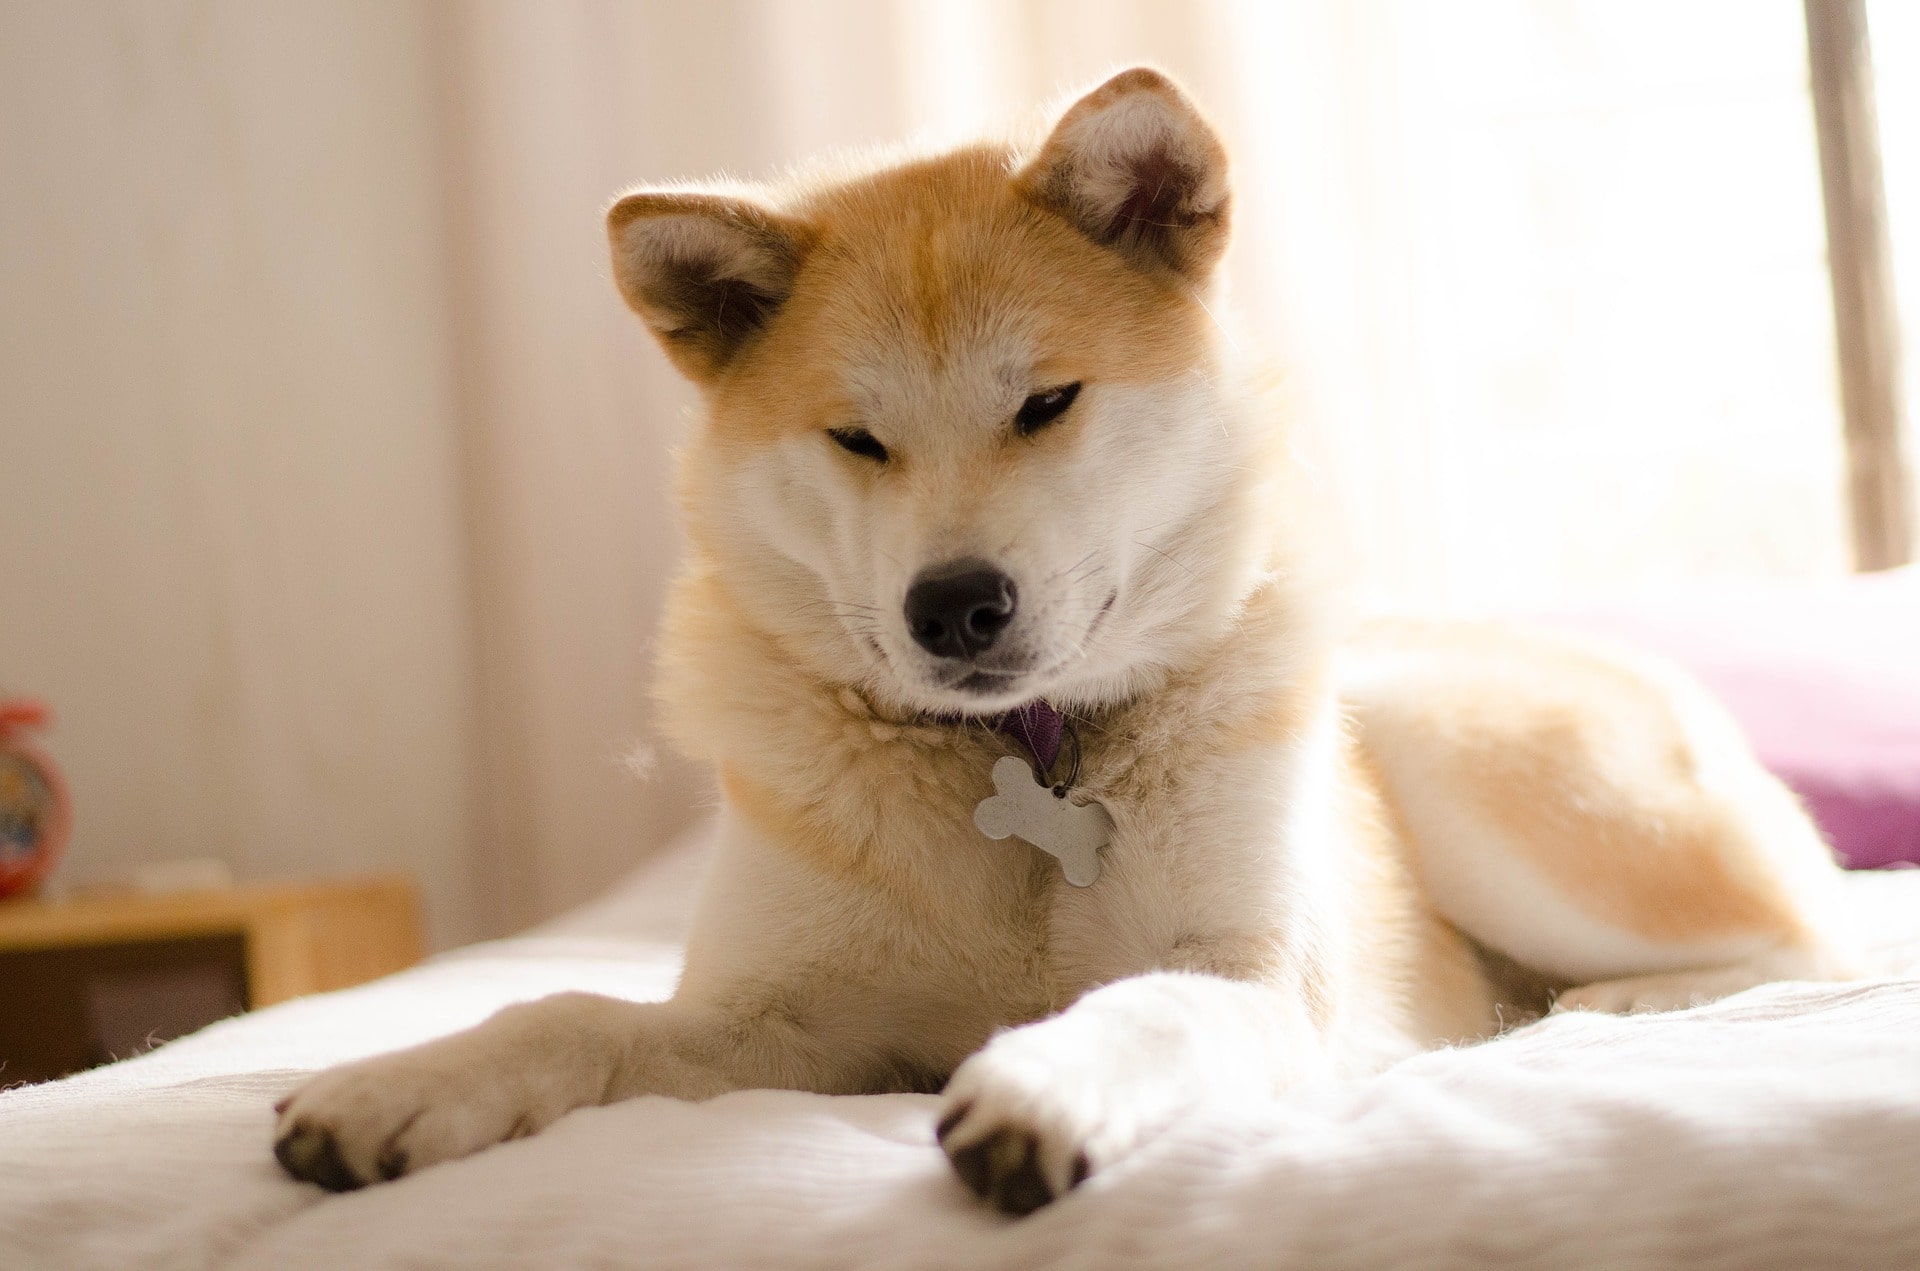 El perro llamado Beni hace varios esfuerzos para repetir con claridad las palabras japonesas.